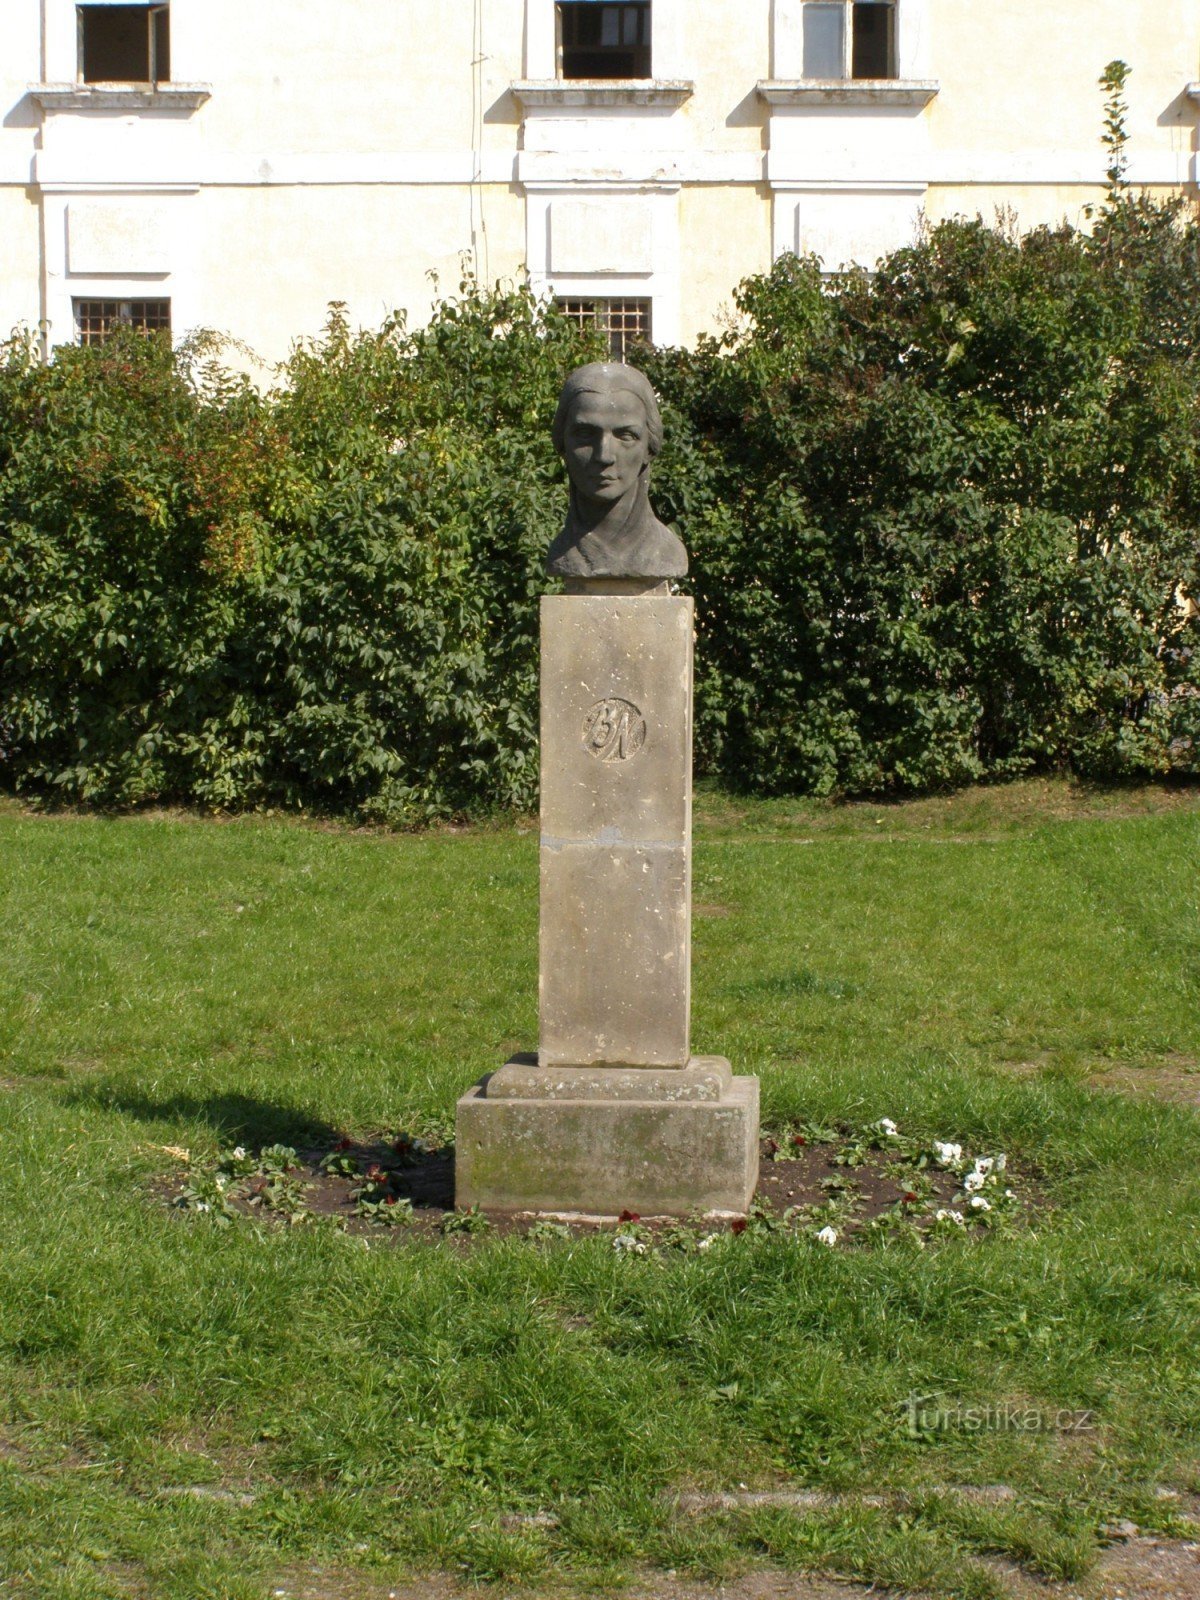 Josefov - monumentul lui Bozena Němcová